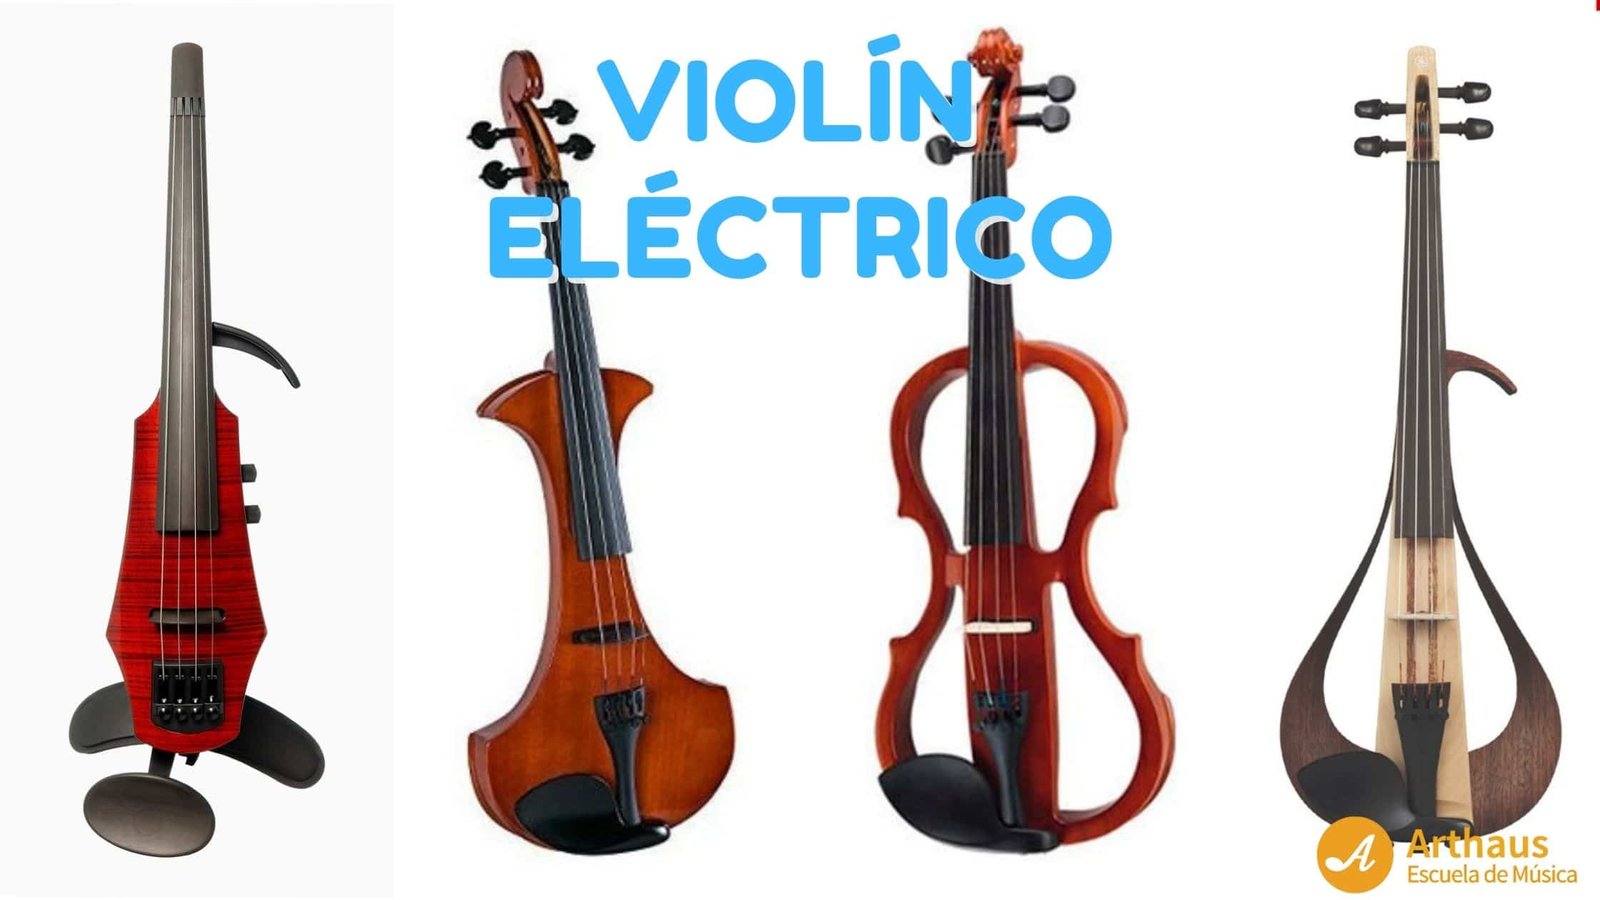 Violín Eléctrico - Arthaus Escuela Música Online